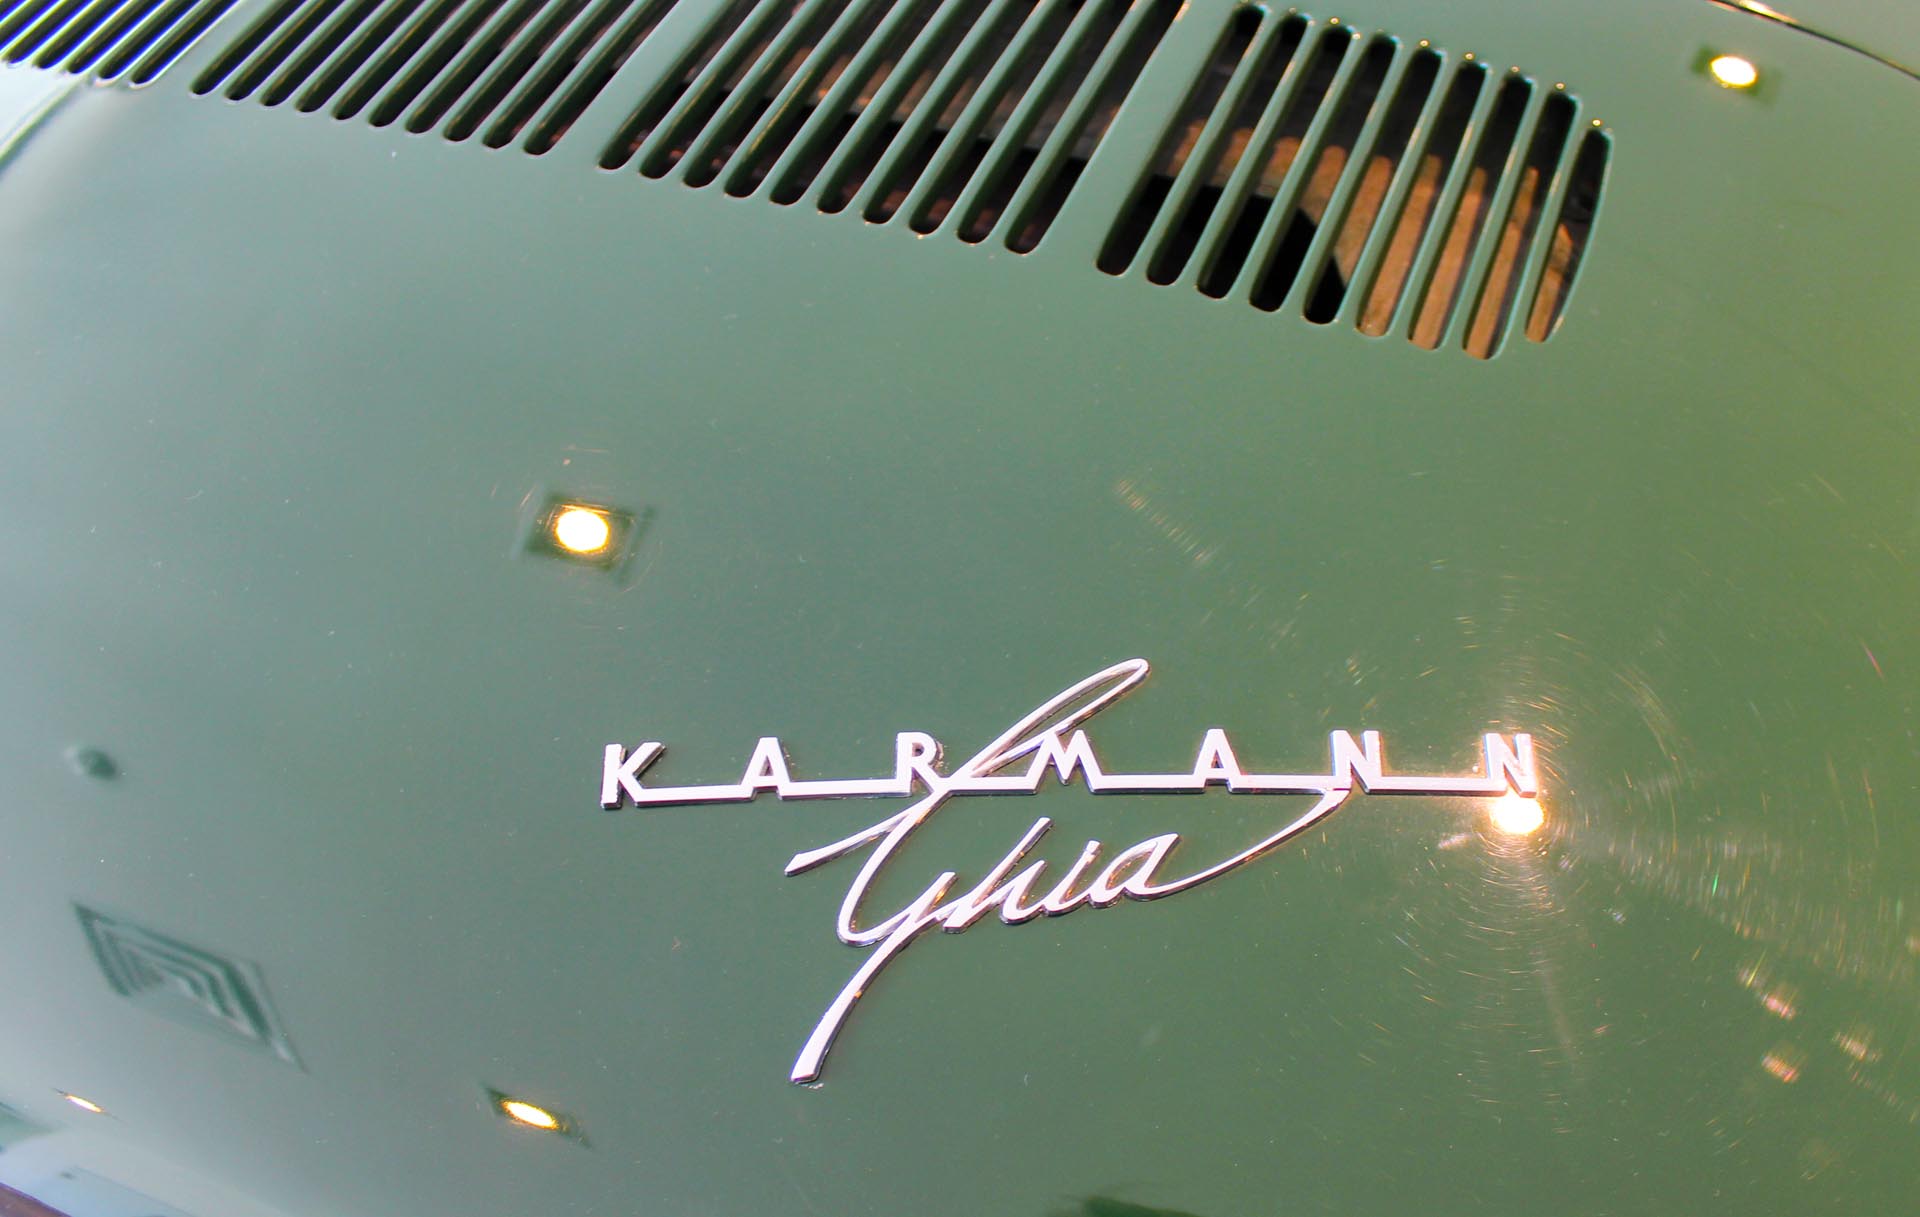 Karmann Ghia badge